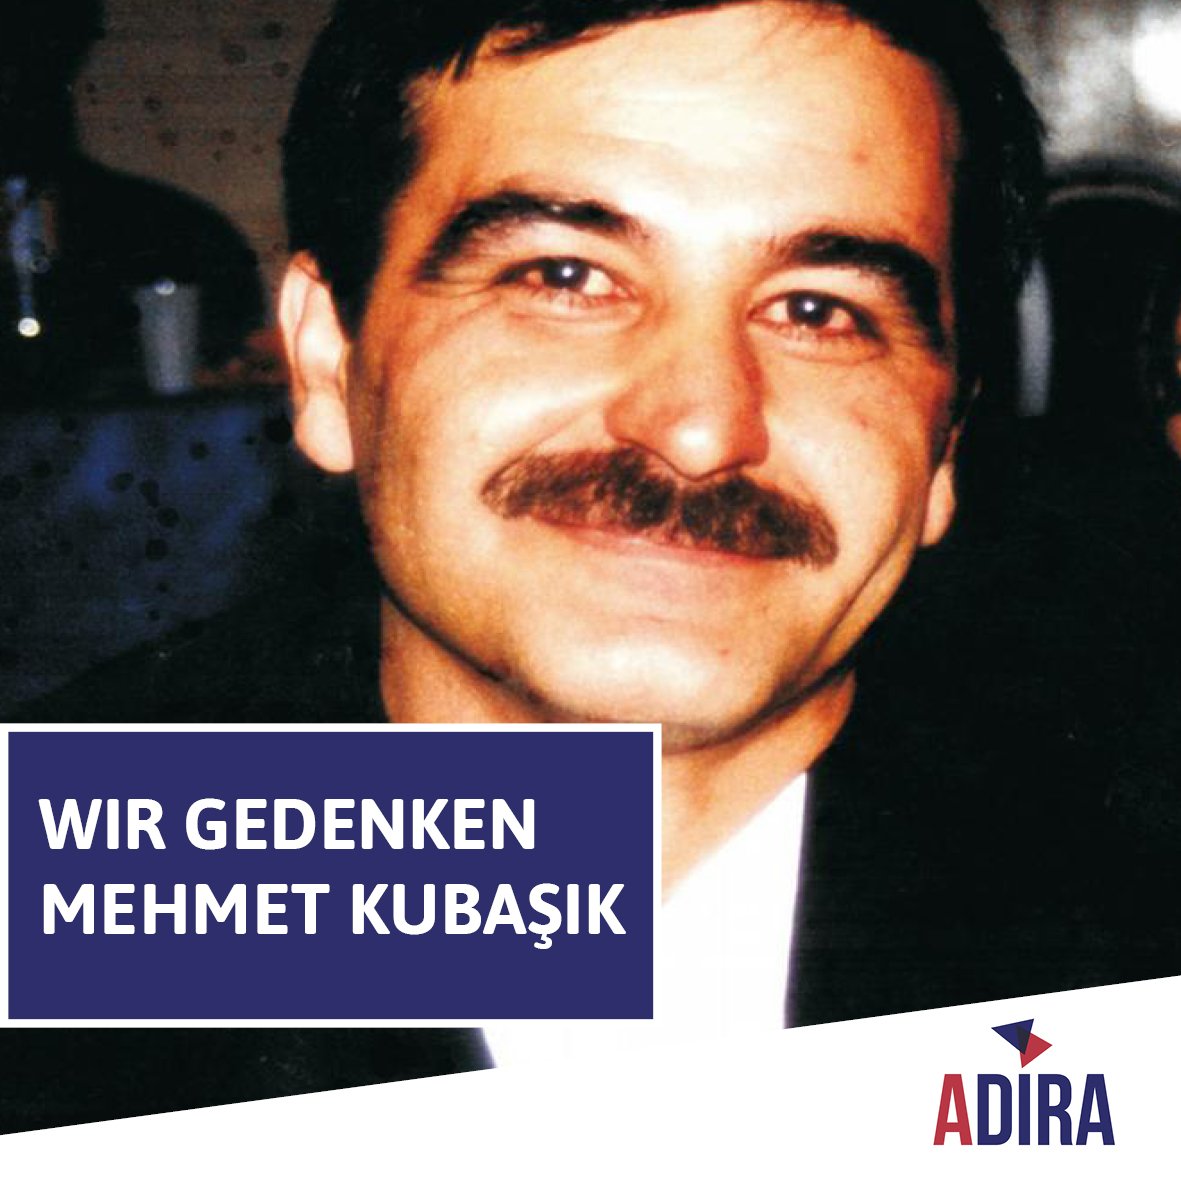 In Erinnerung an Mehmet Kubaşik. Er wurde am 4. April 2006 in seinem Kiosk in #Dortmund von Mitgliedern des rechsterroristischen NSU aus rassistischen Motiven erschossen. Seine Familie fordert nach wie vor eine vollständige Aufklärung der Tat. #KeinSchlussstrich #nonazisdo